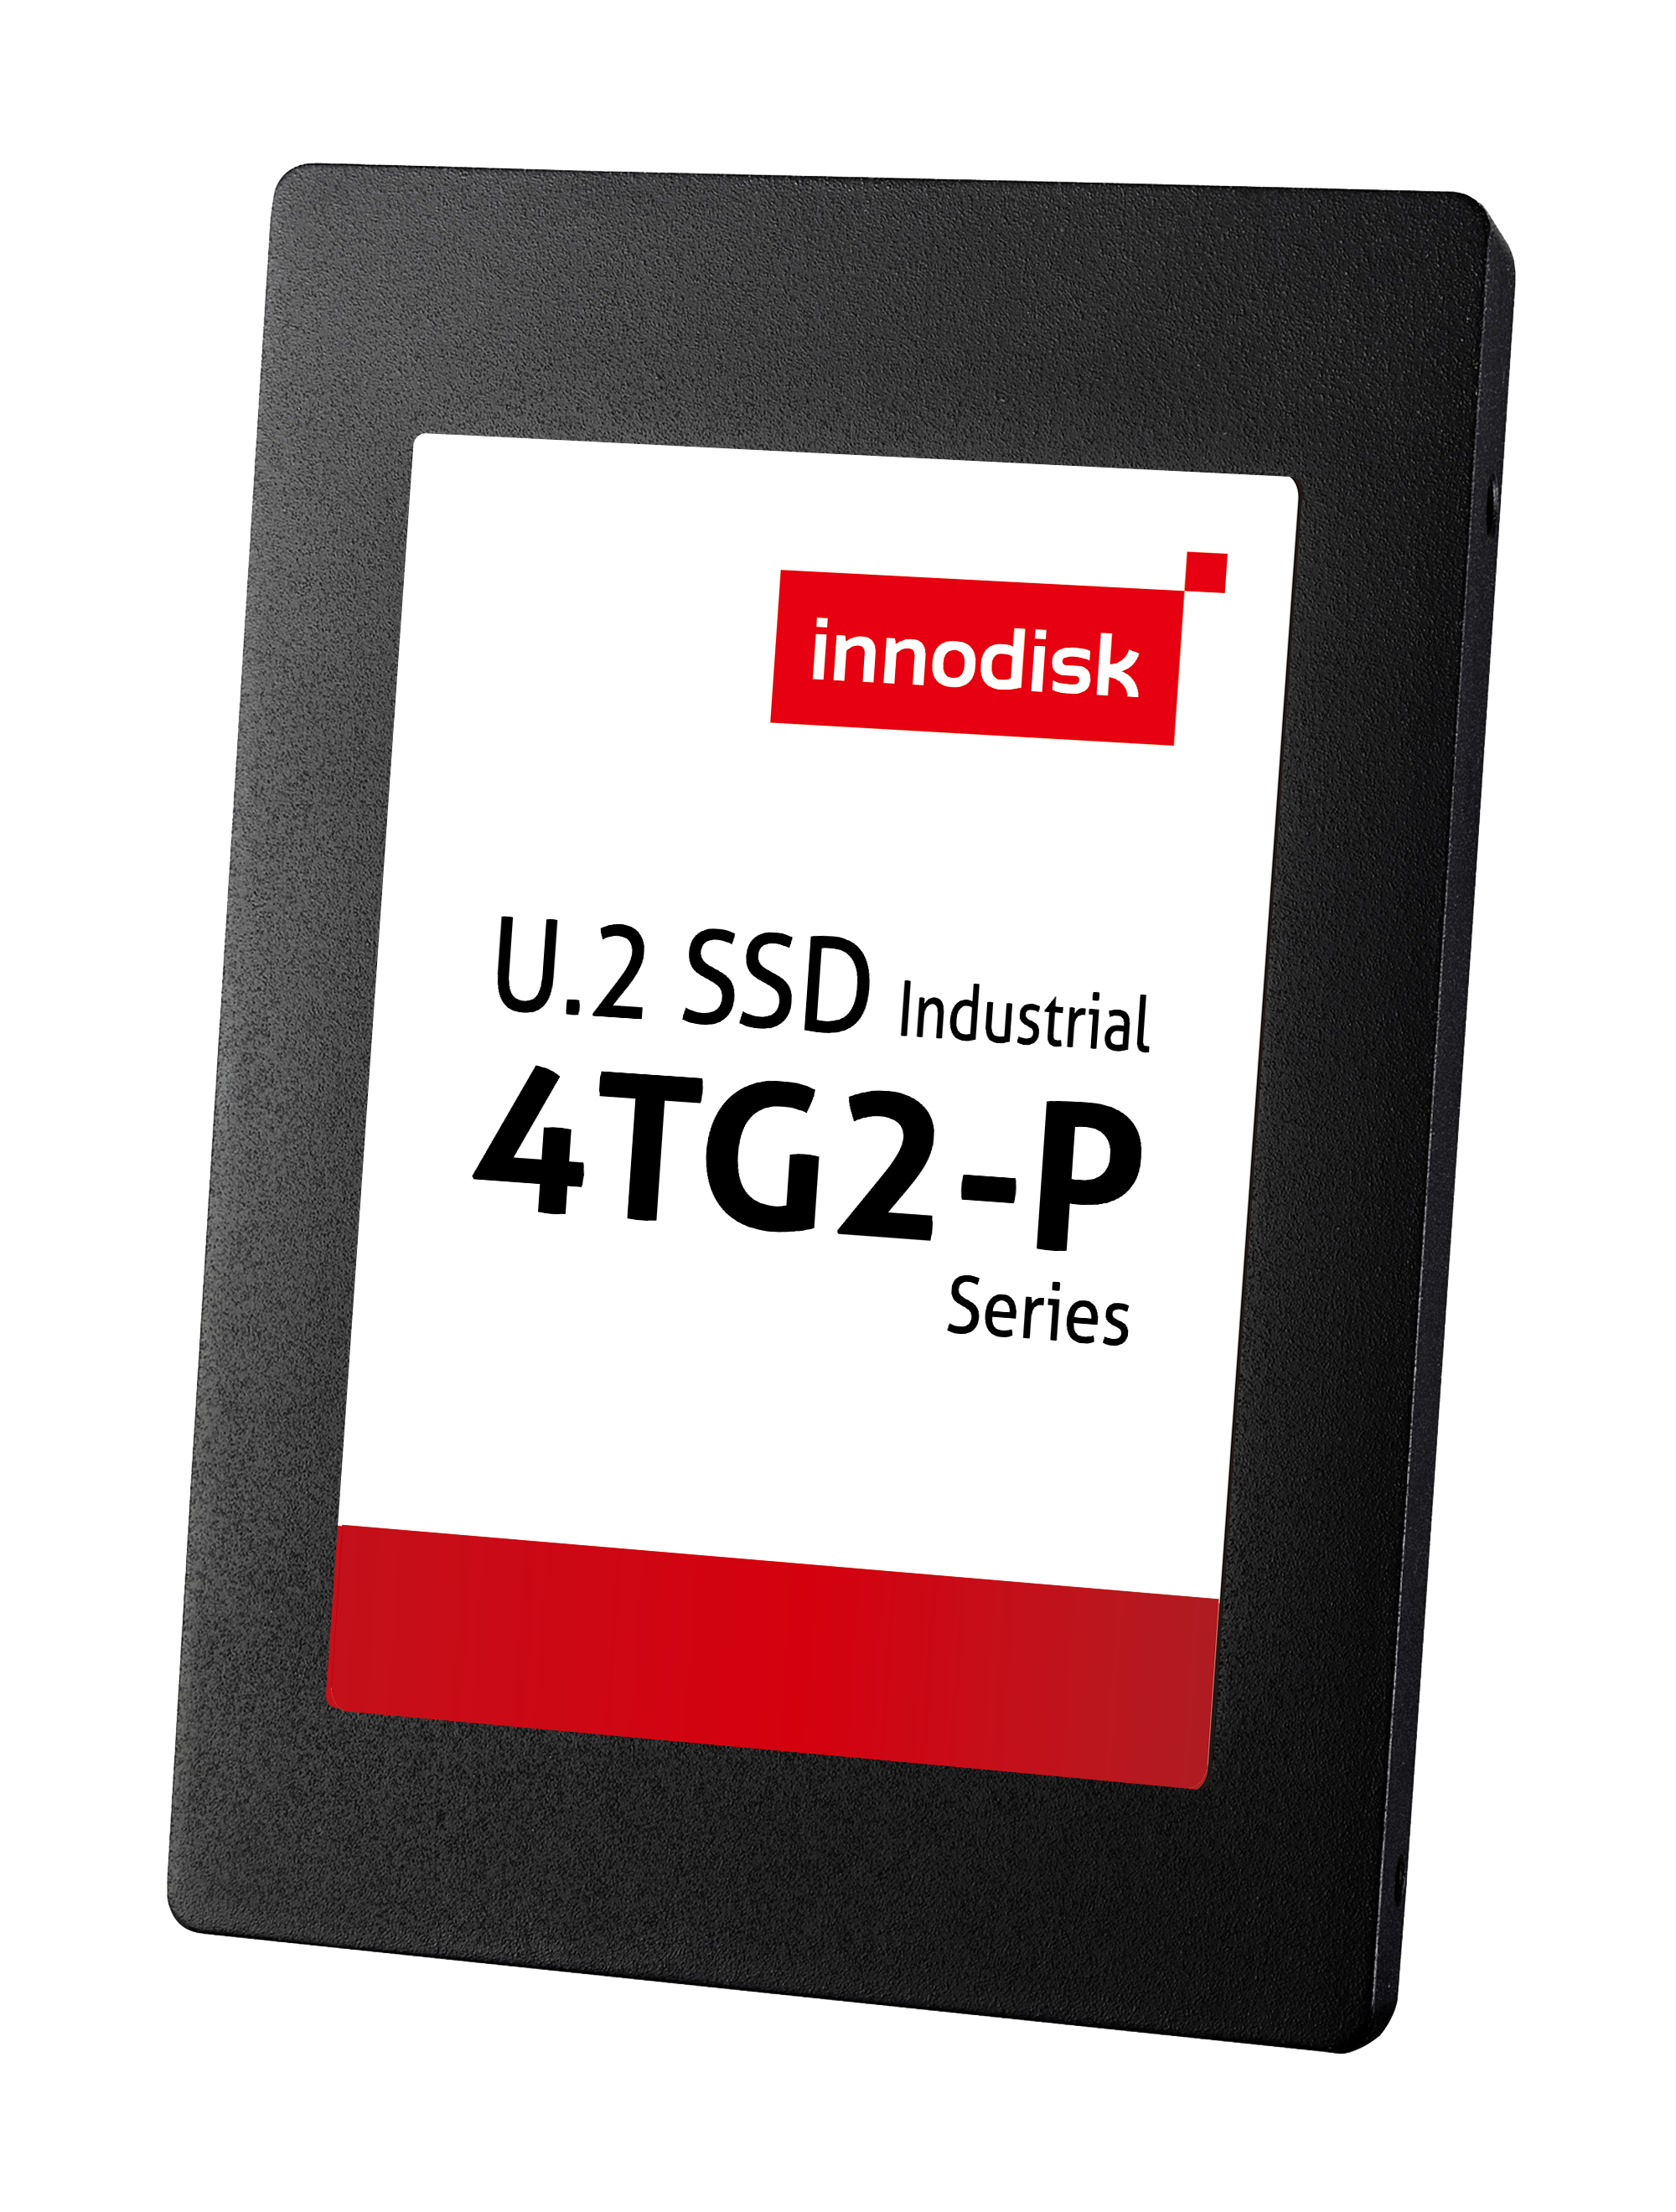 U.2 SSD 4TG2-P